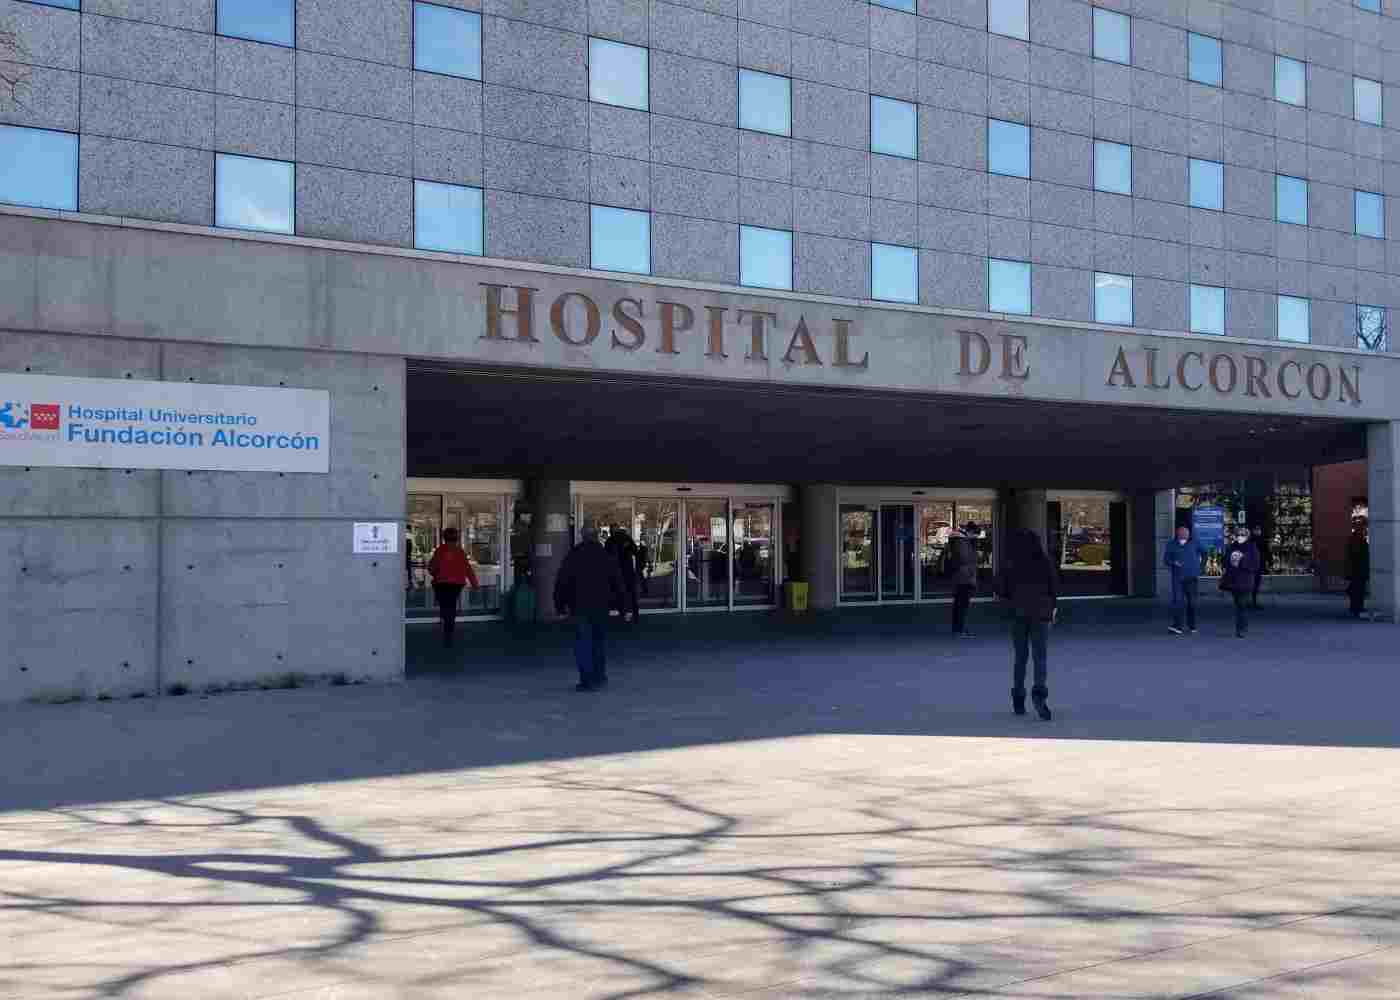 El Hospital Universitario de Alcorcón premiado por programa "Acompañamiento al Debut"